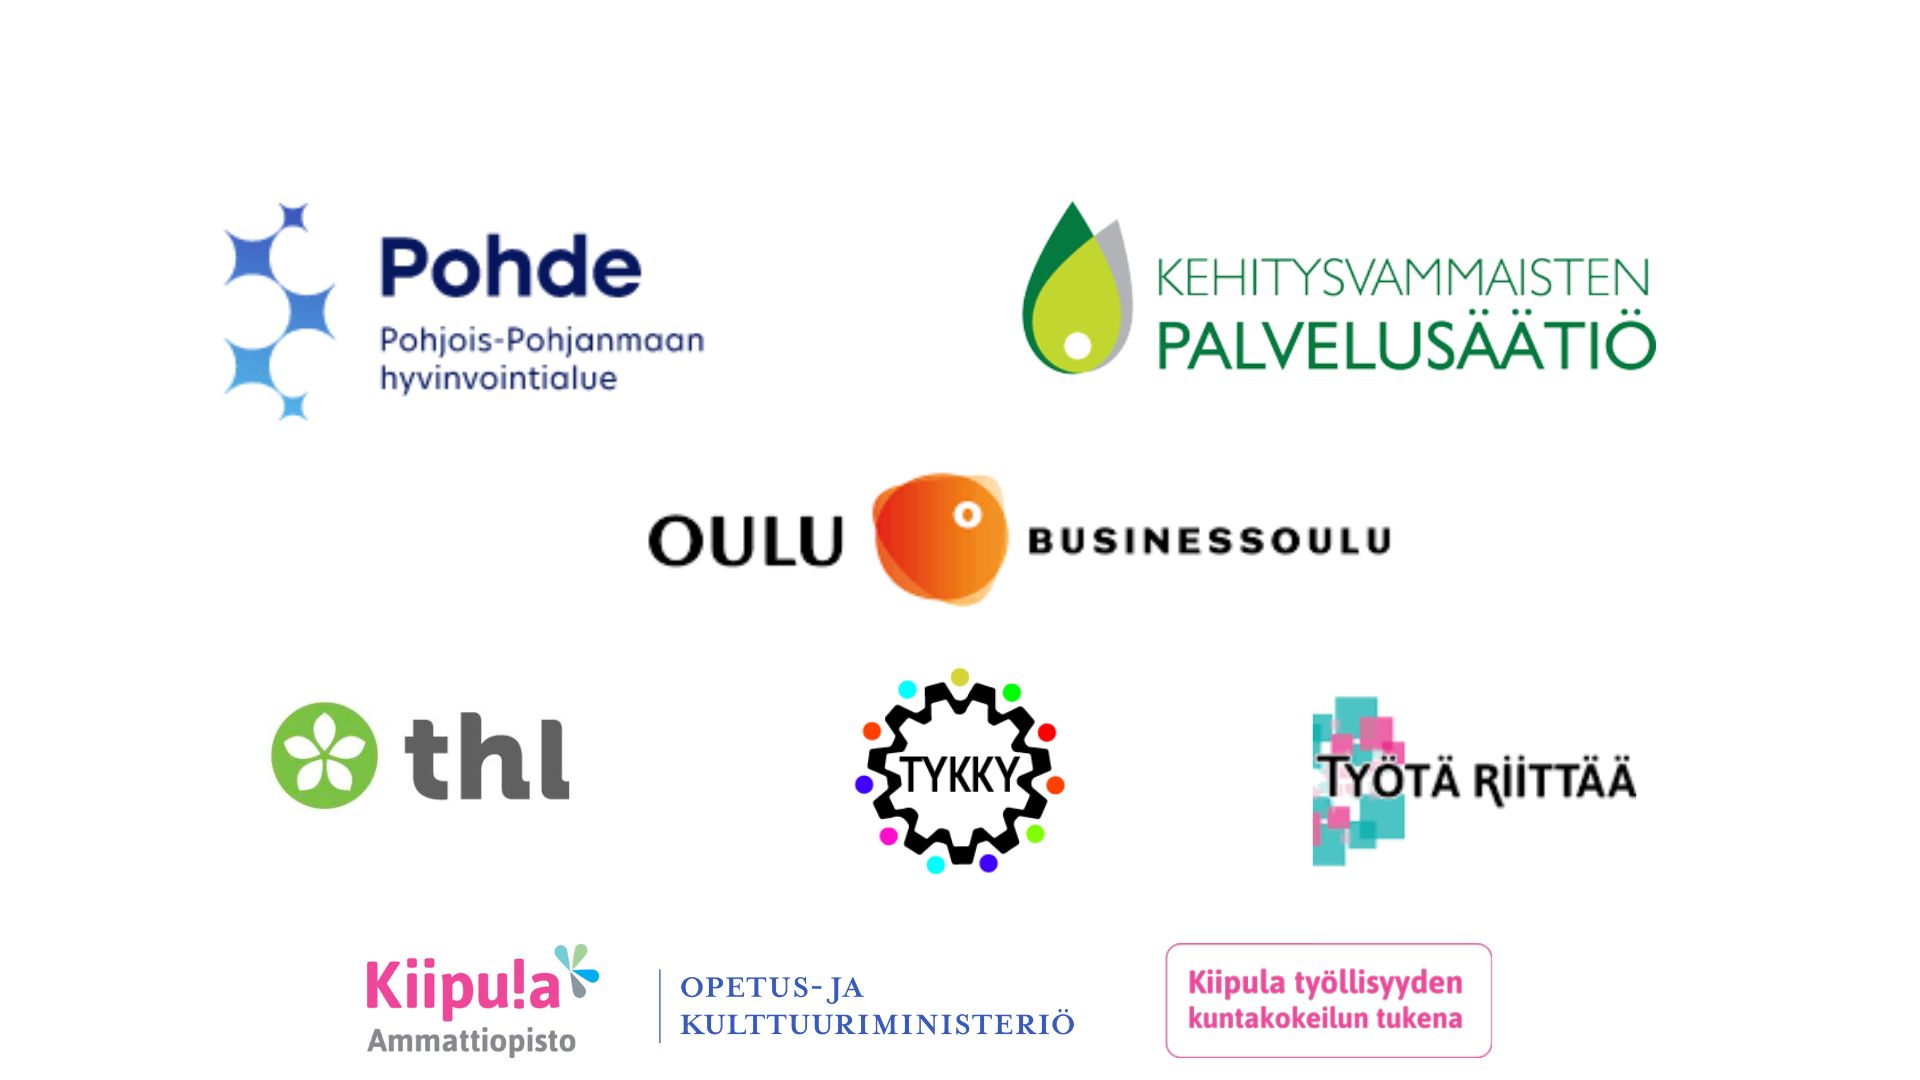 Kuvassa ovat mukana olevien yritysten logot. Mukana ovat Pohjois-Pohjanmaan hyvinvointialue, Kehitysvammaisten palvelusäätiö, BusinessOulu työllisyyspalvelut, thl, Tykky-hanke, Työtä Riittää -hanke ja Kiipula työllisyyden kuntakokeilun tukena -hanke.